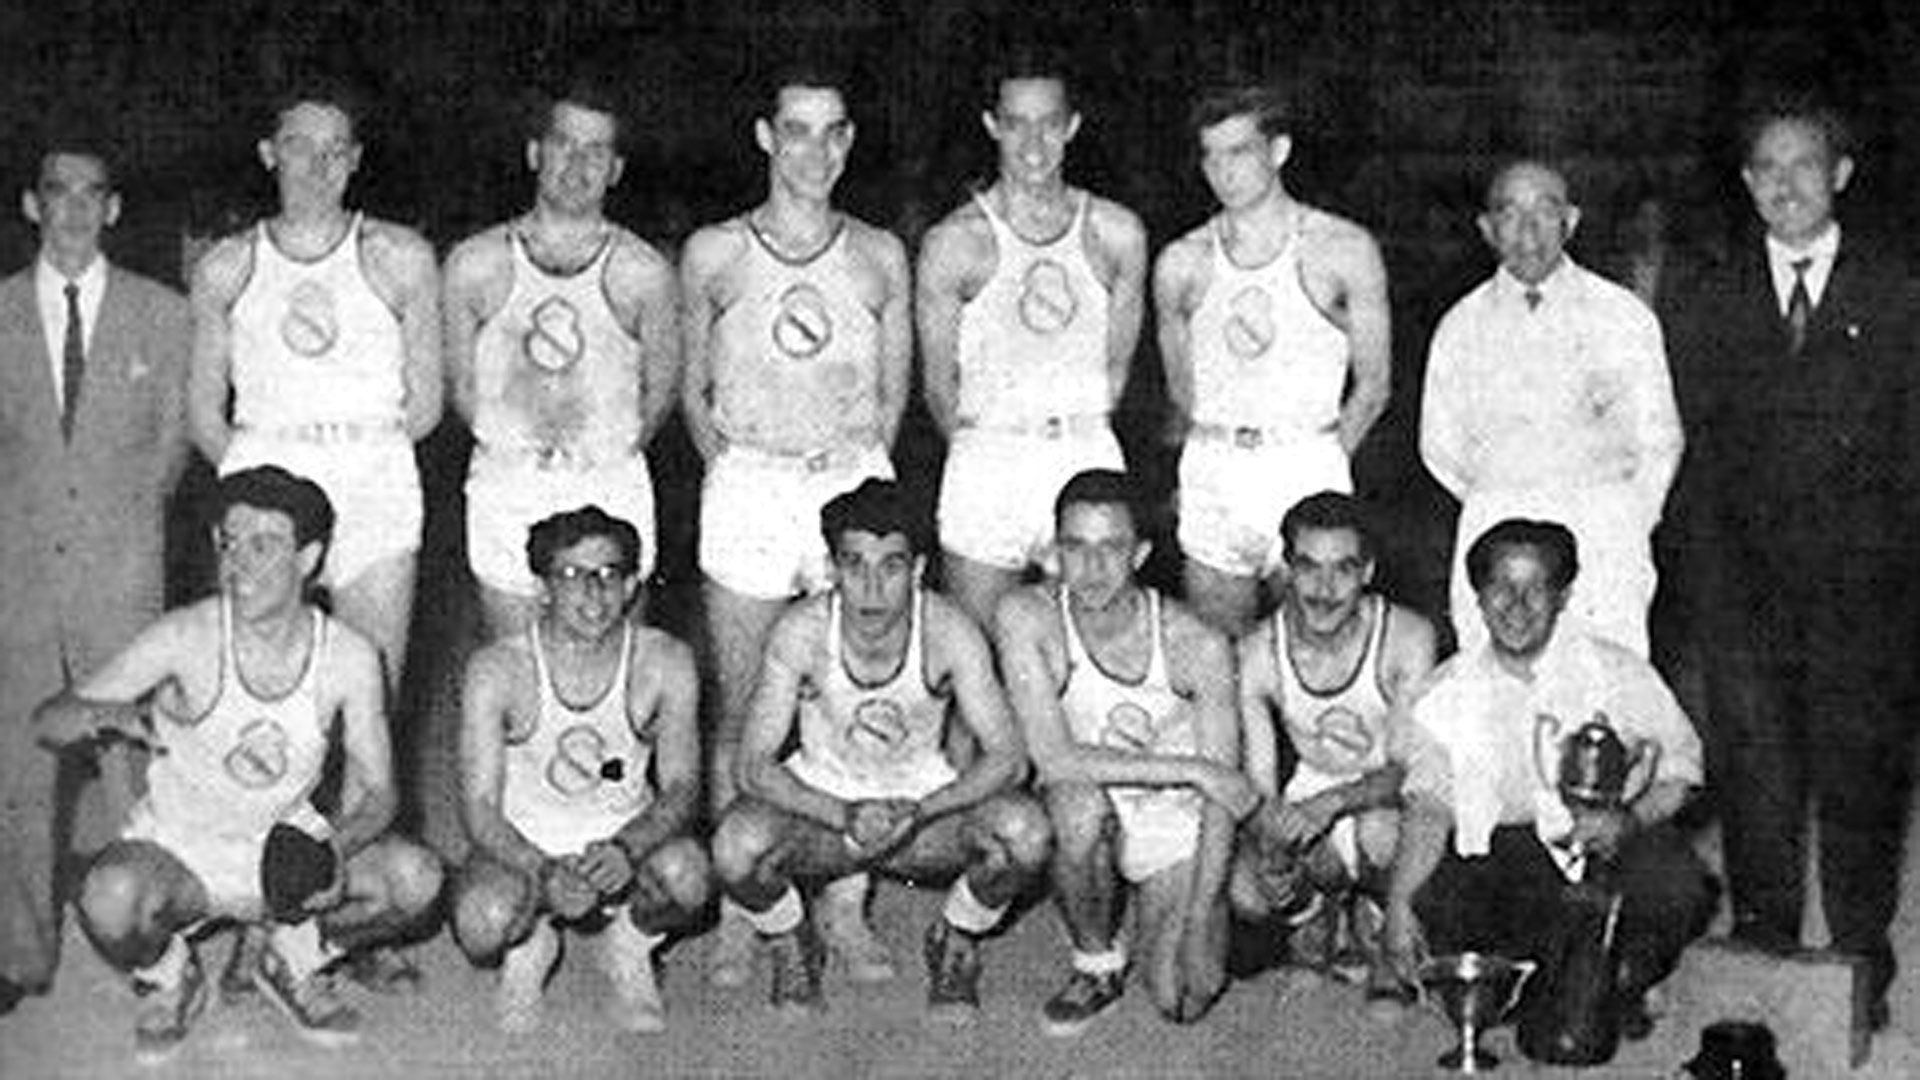 Today marks 72 years since Basketball Copa de España 